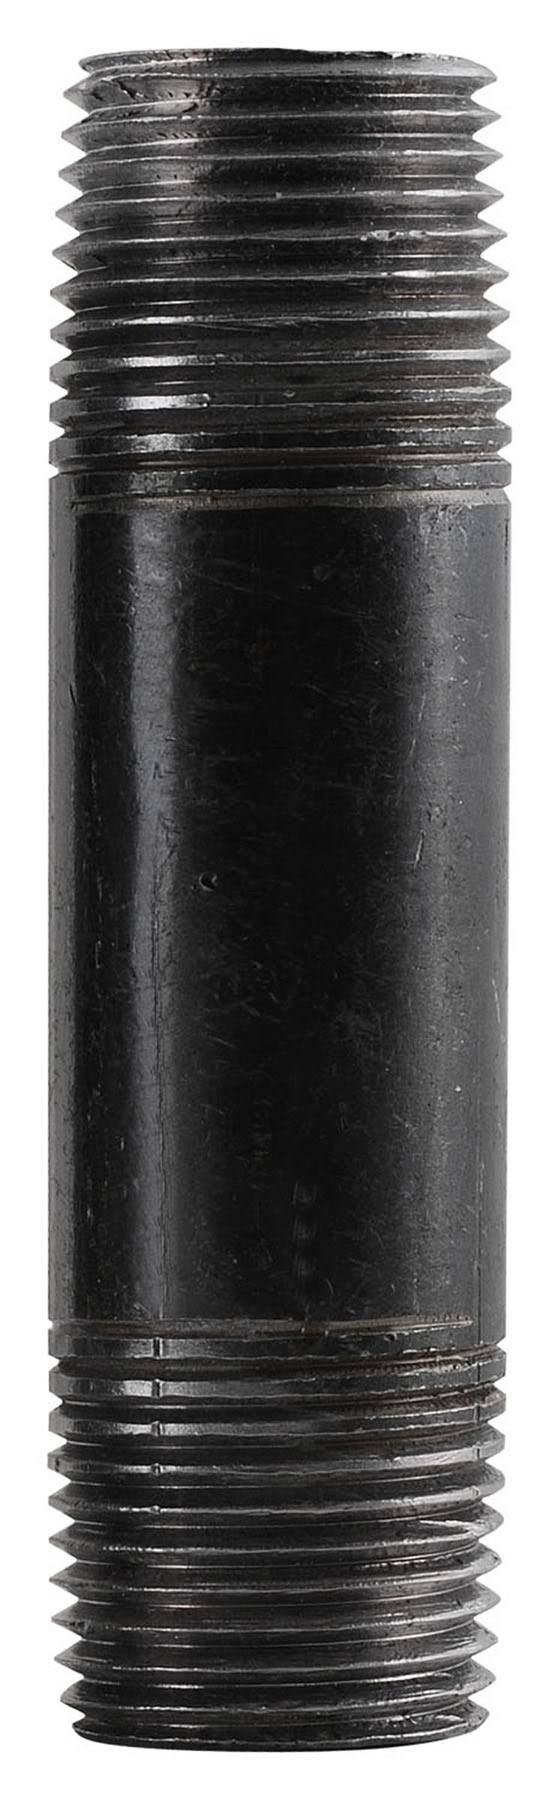 Mueller Global Steel Nipples - Black, 0.5in x 1.5in